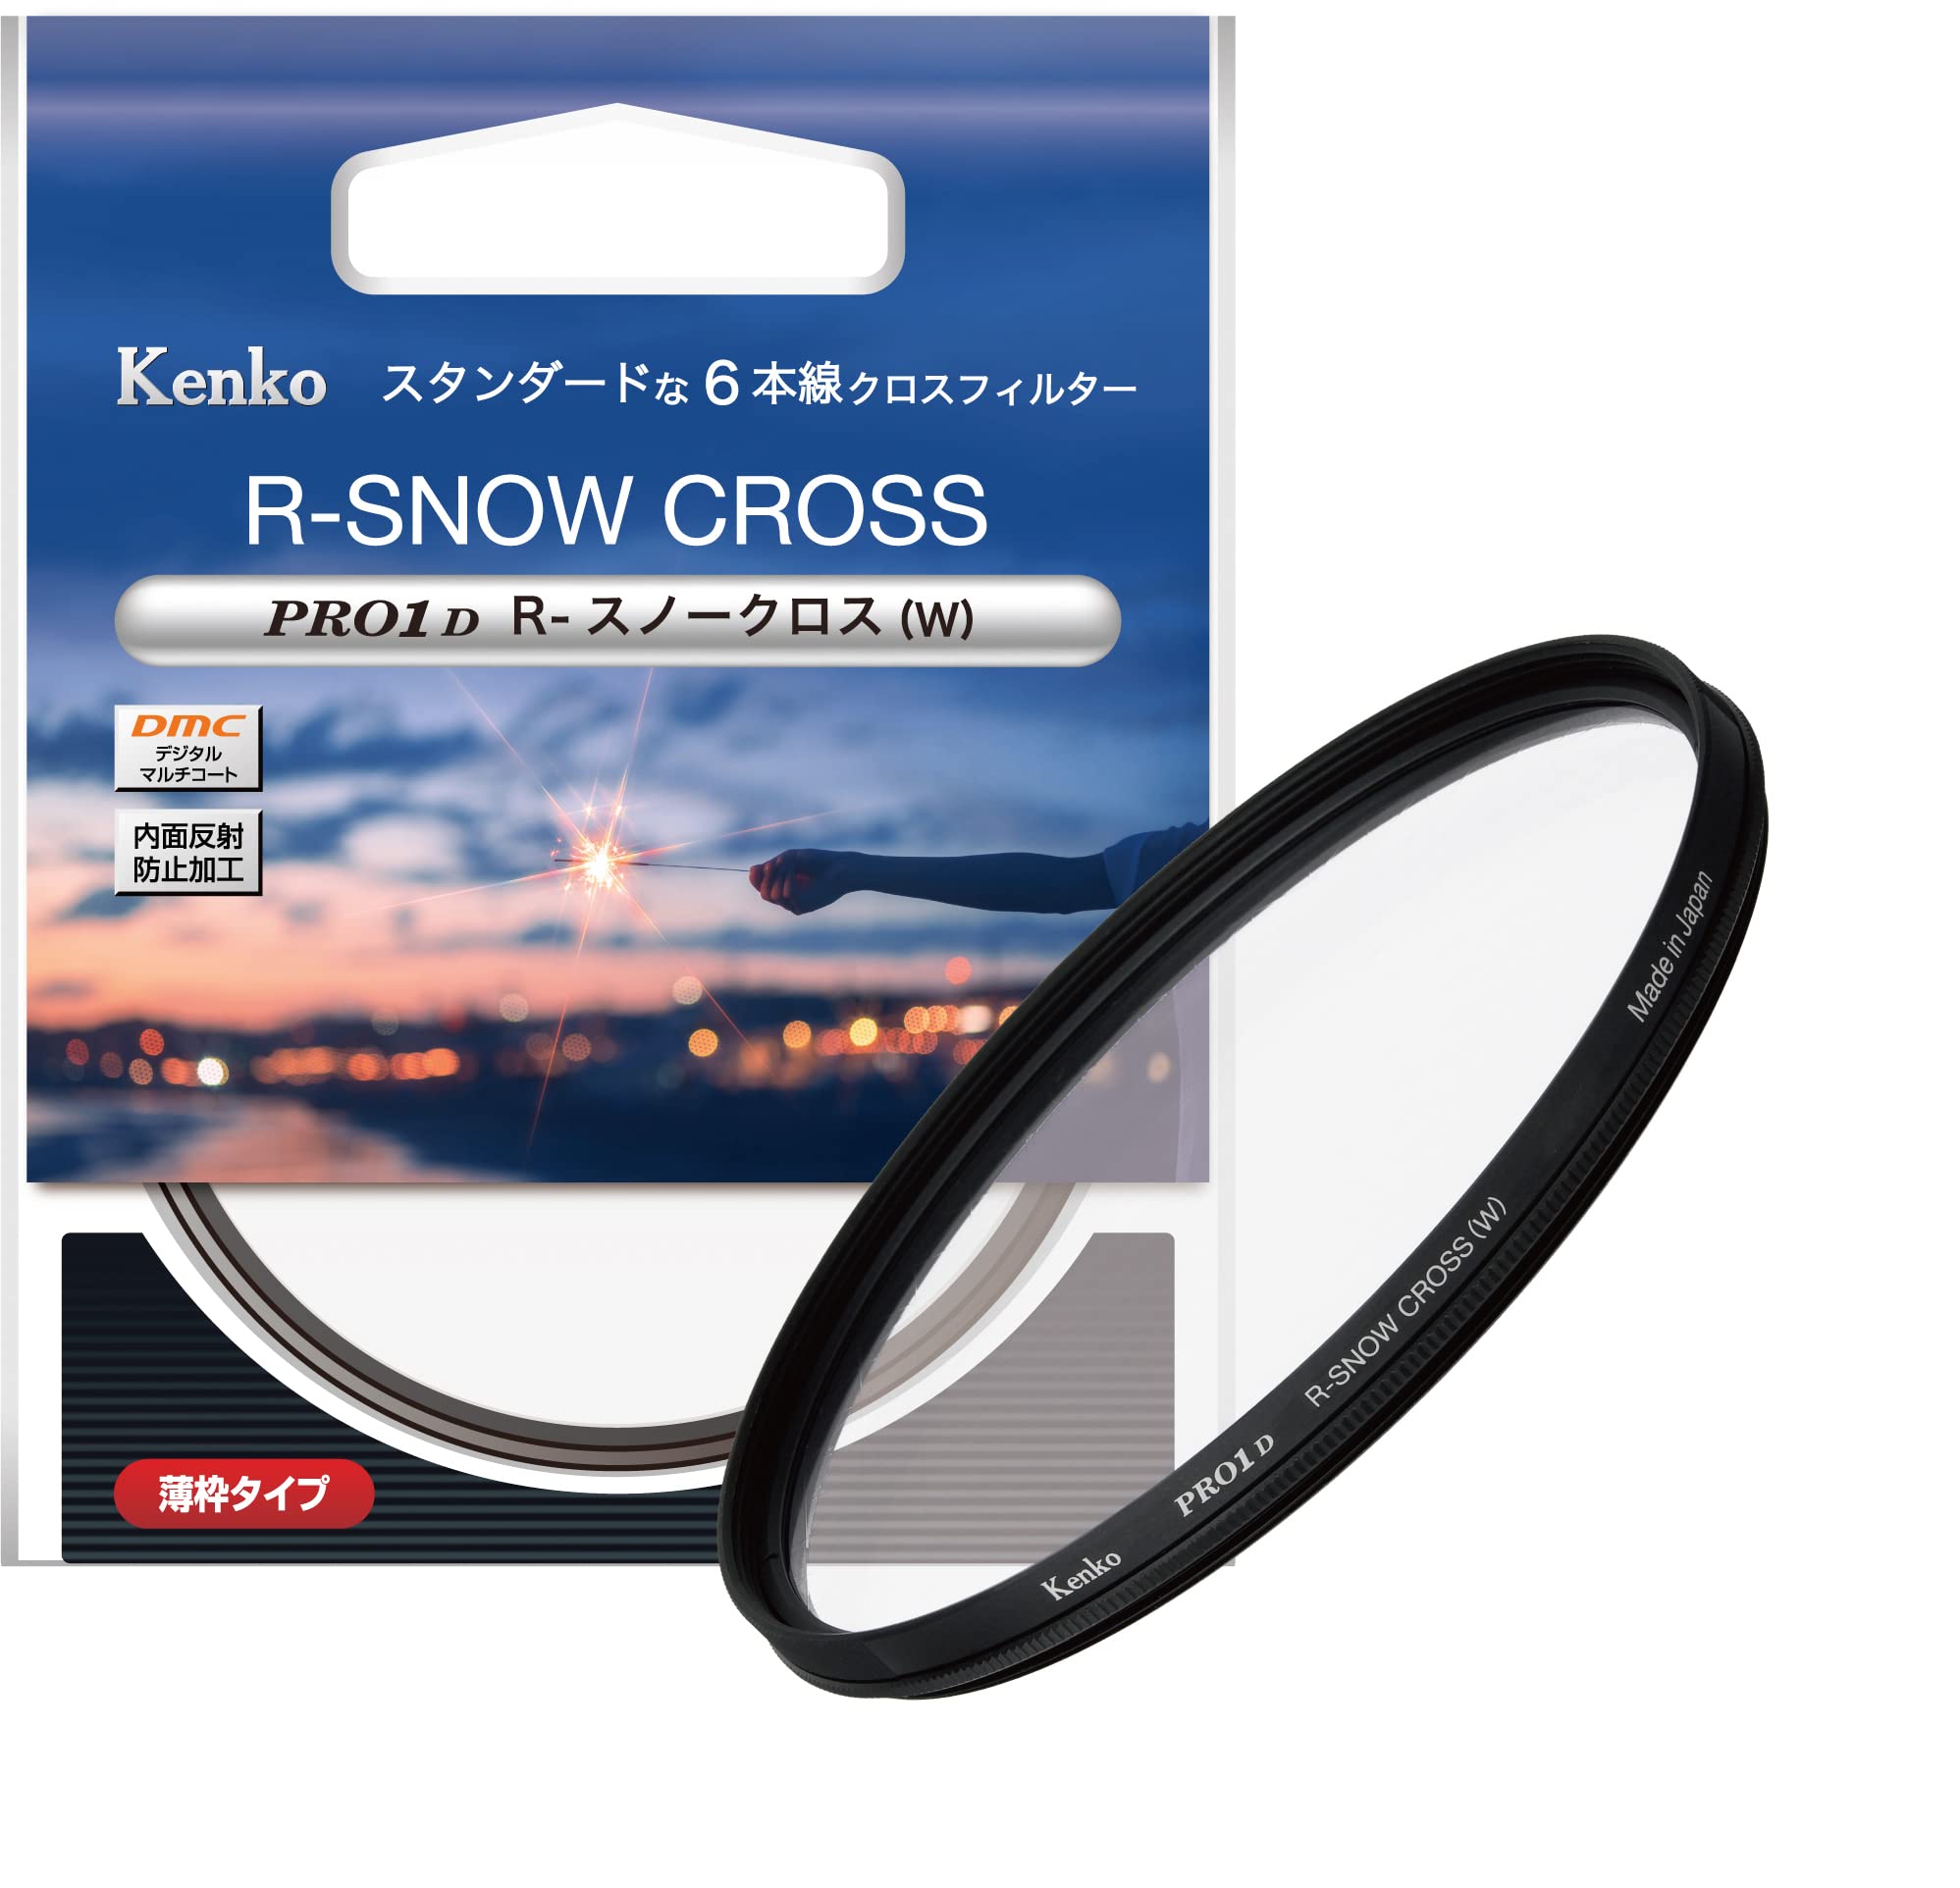 ケンコー(Kenko) クロスフィルター PRO1D R-スノークロス (W) 52mm 6本クロス効果 夜景・イルミネーション・光の演出に 薄枠 825297 特別